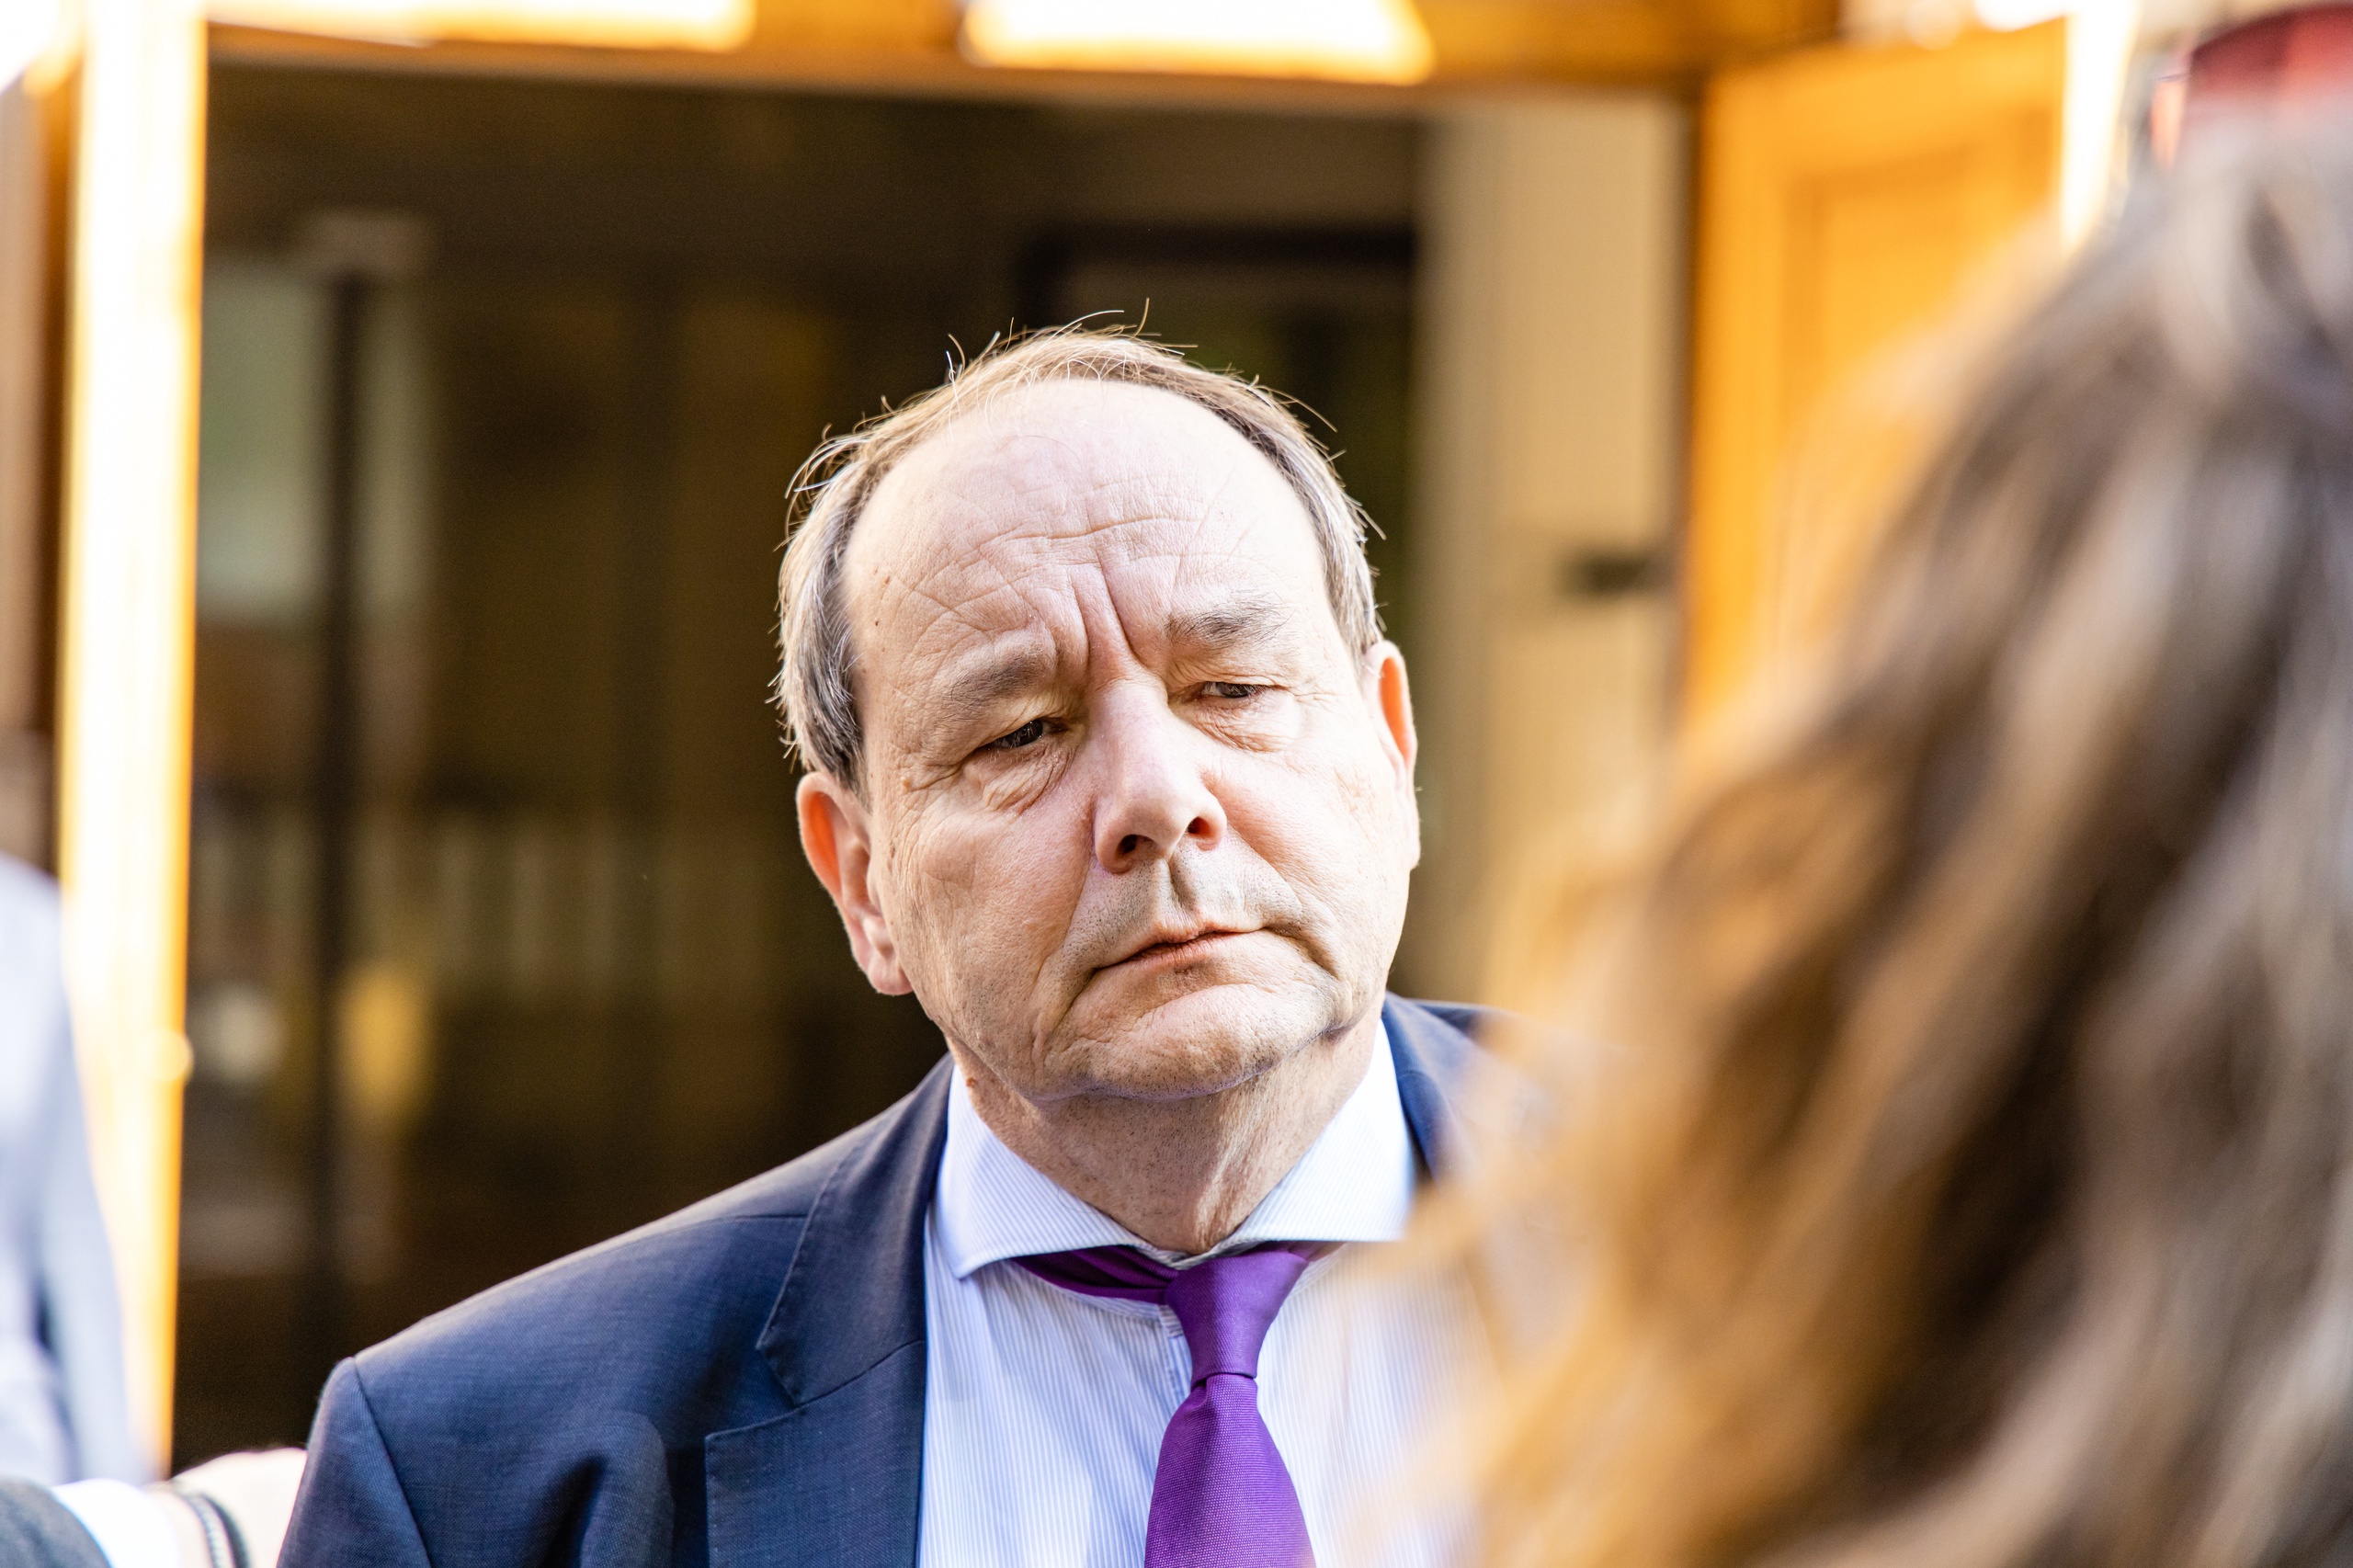 Staatssecretaris Hans Vijlbrief van Mijnbouw bij aankomst op het Binnenhof, voorafgaand aan de wekelijkse ministerraad.